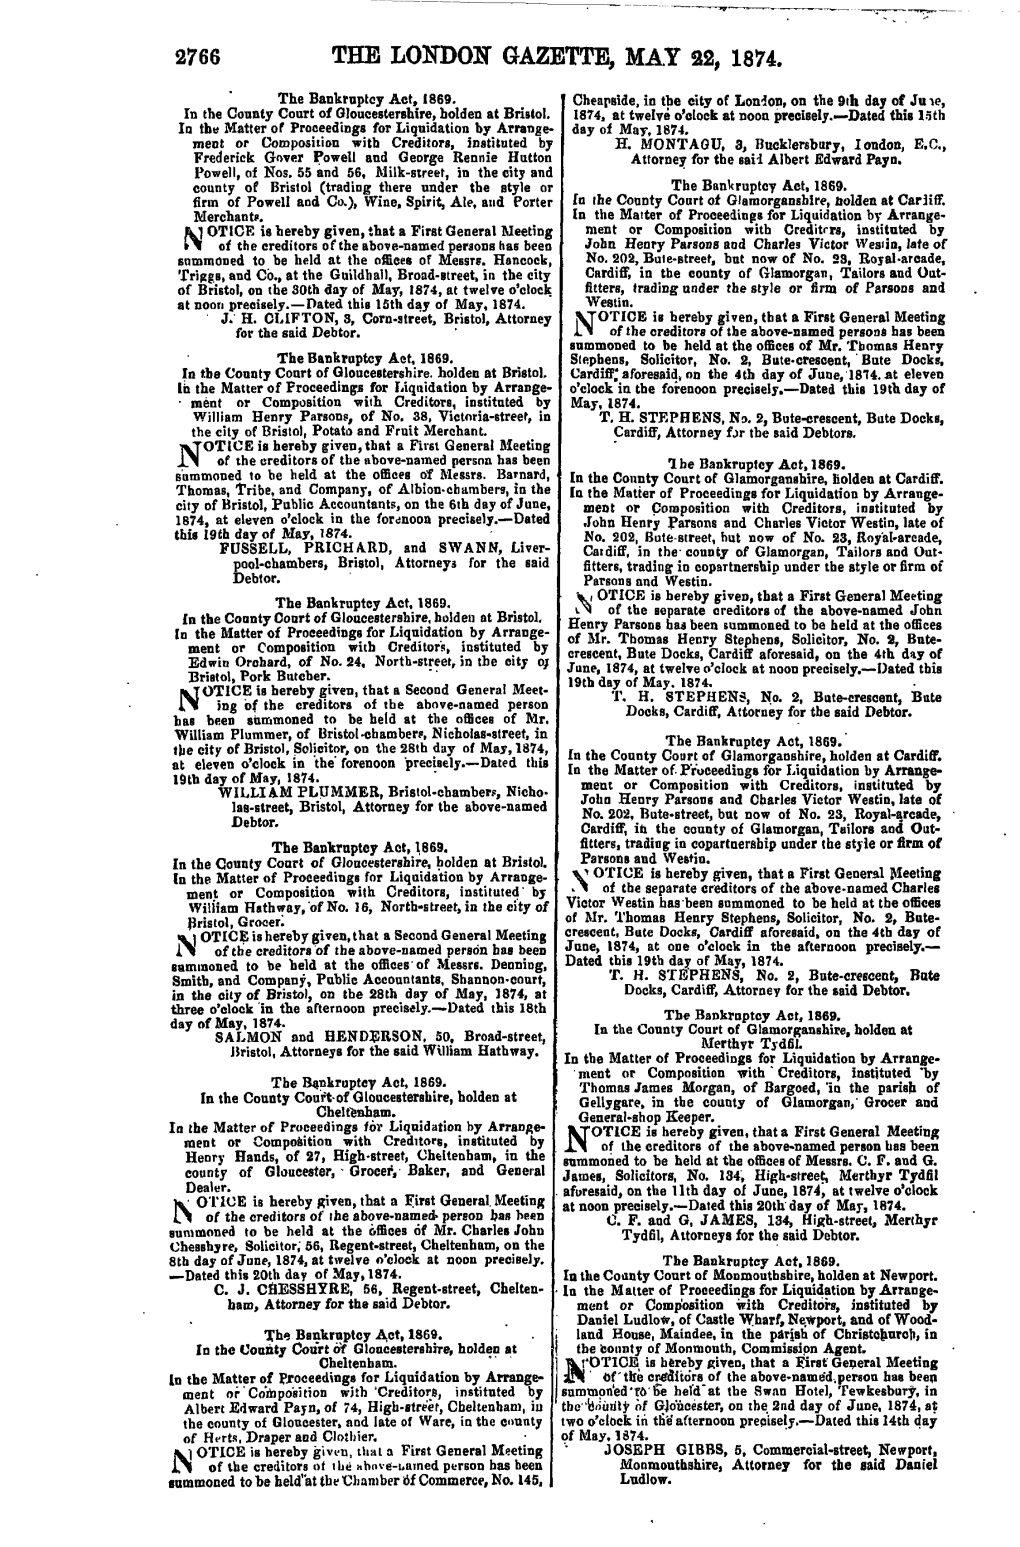 2766 the London Gazette, May 22, 1874